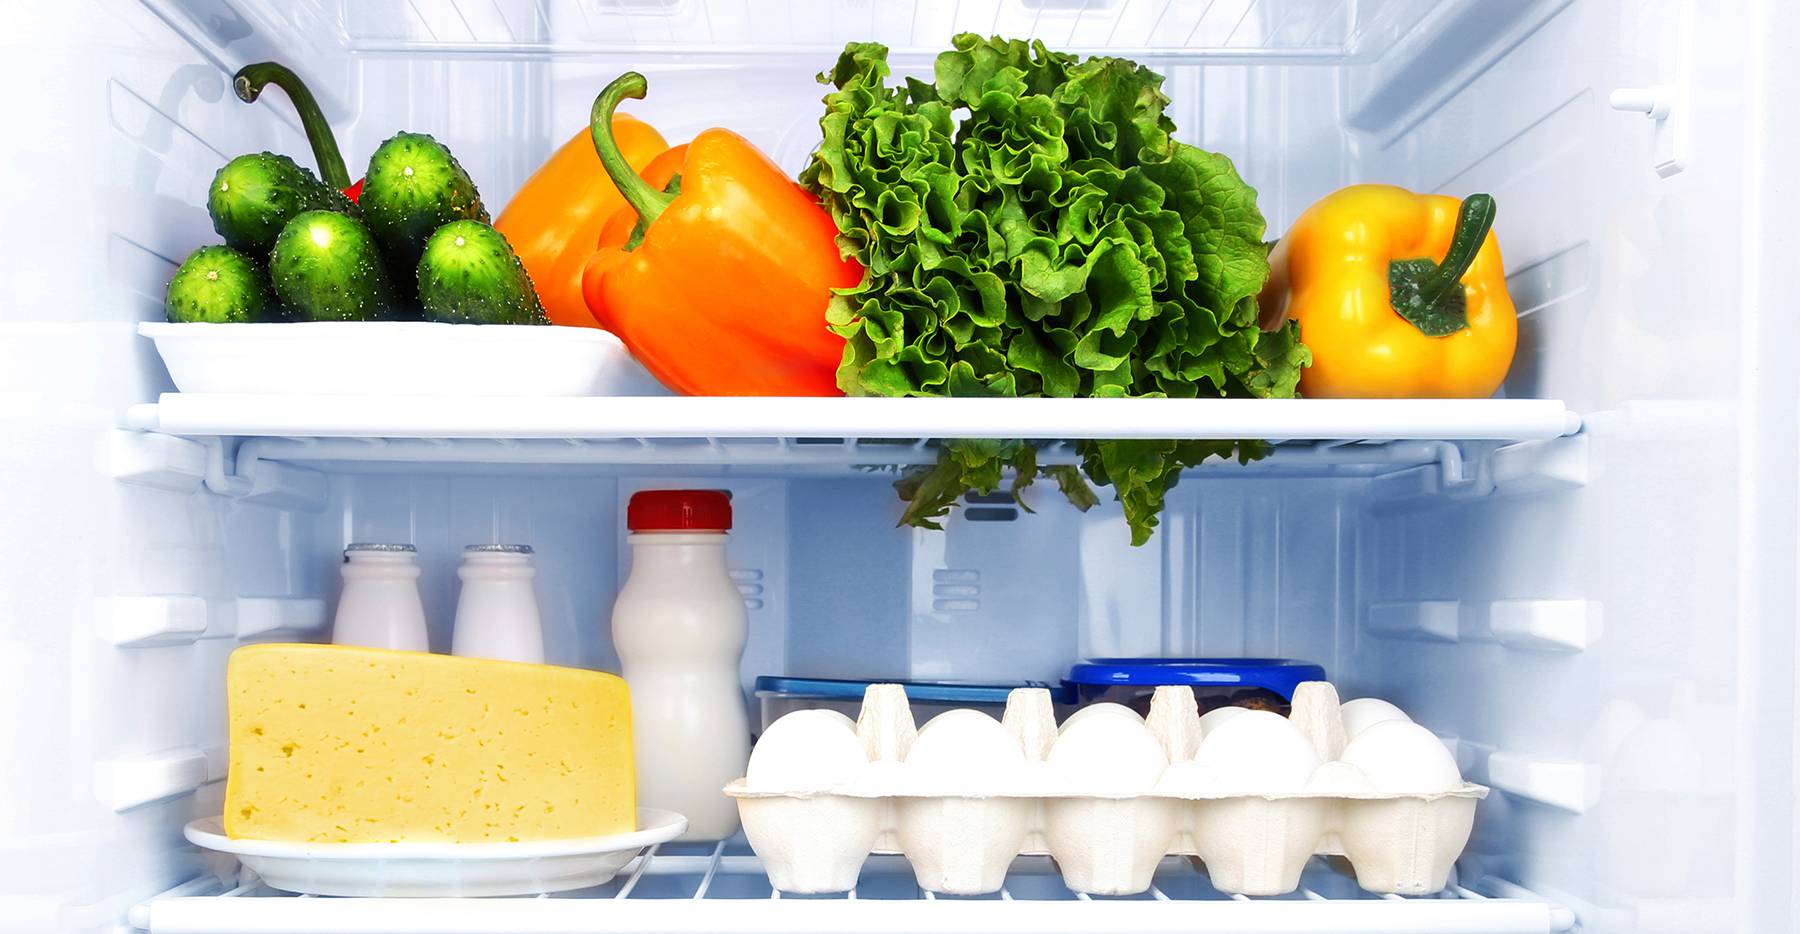 نشستن مواد غذایی - سبزیجات در یخچال